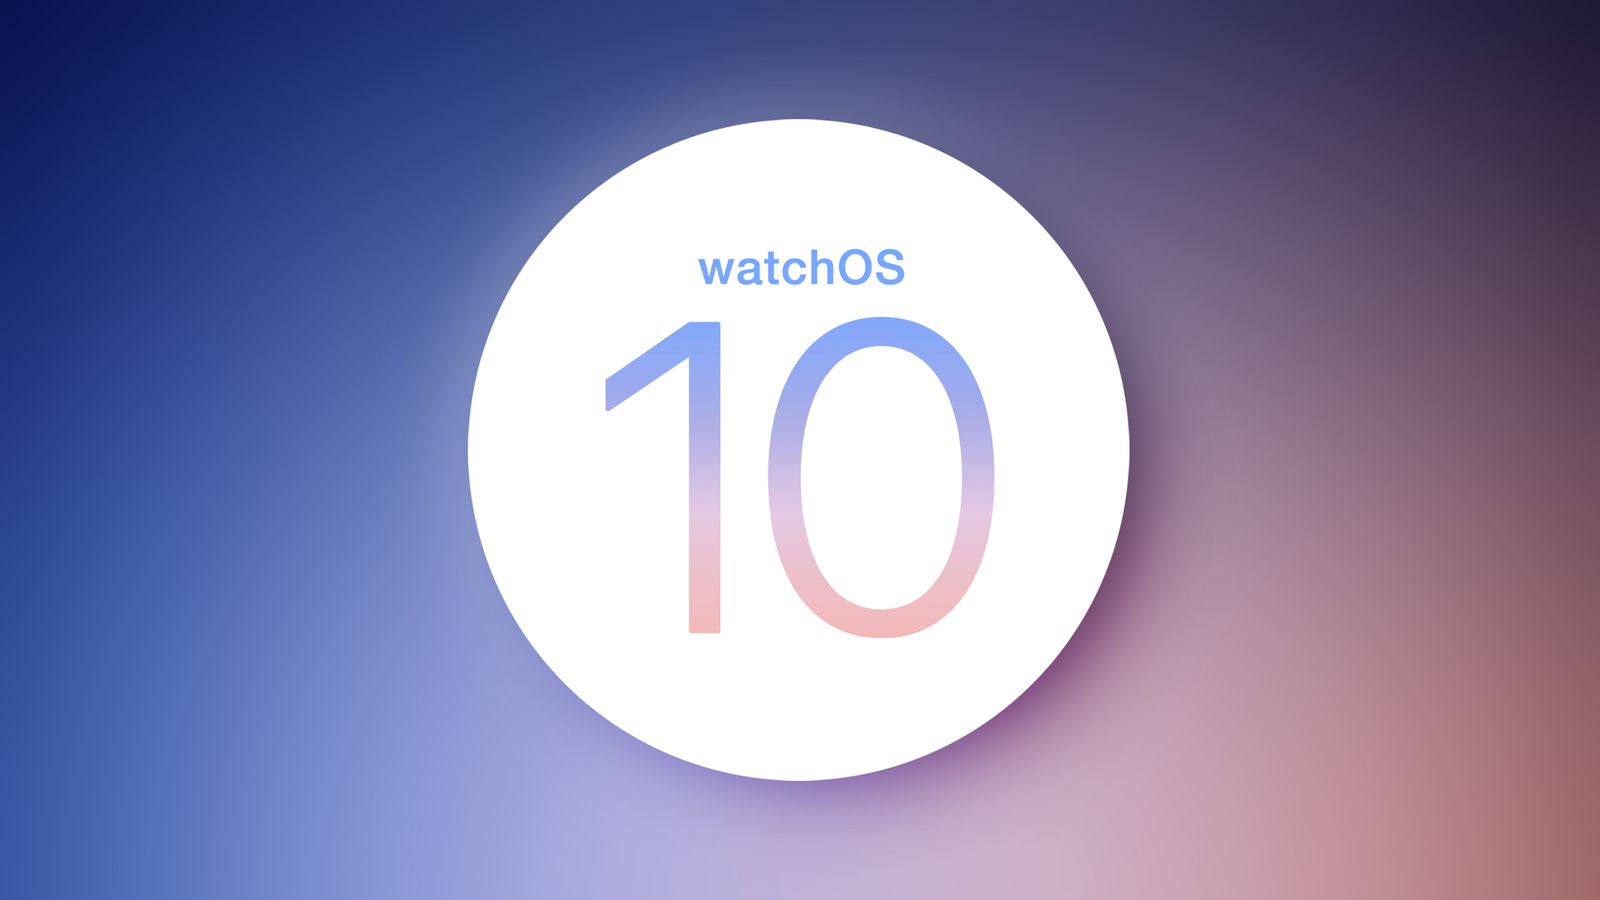 Гурман: Виджеты станут «центральной частью» интерфейса watchOS 10